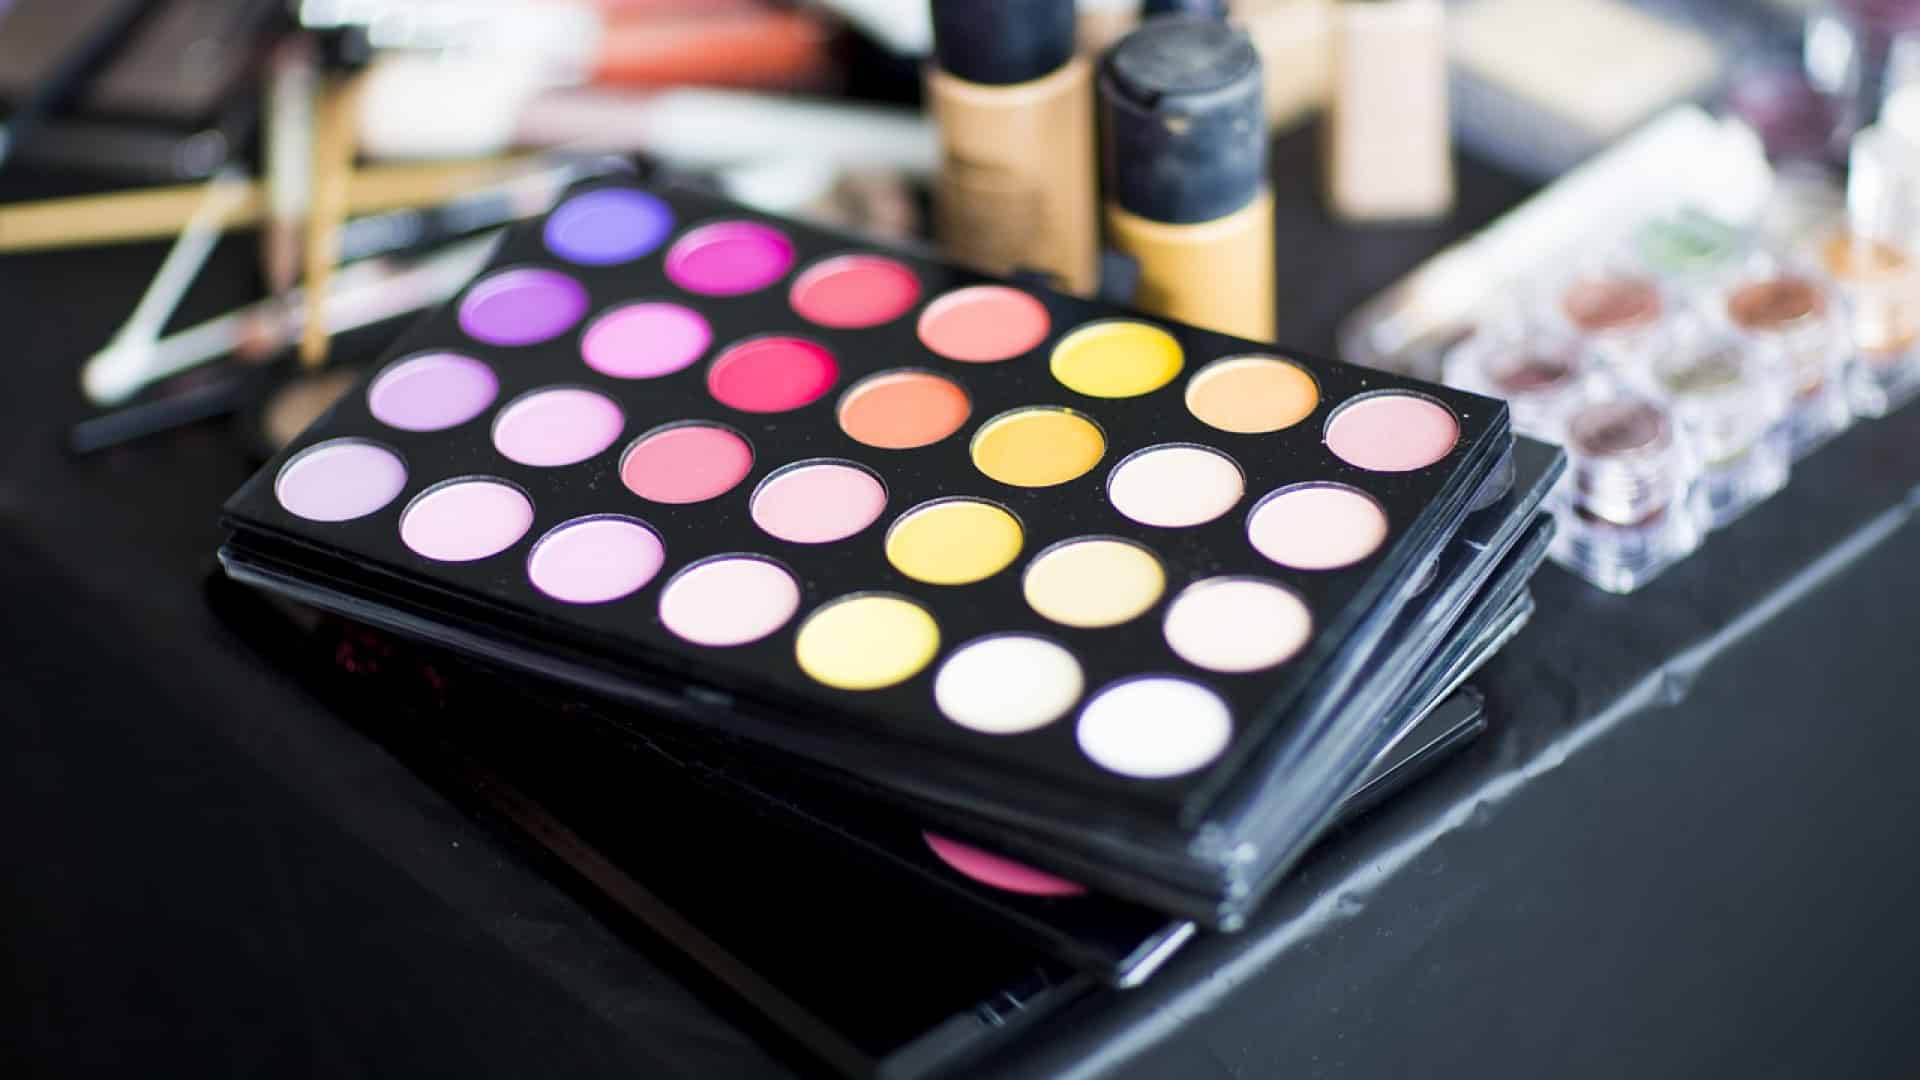 Une variété de produits de maquillage avec une palette de fards à paupières colorés au premier plan, présentant un atout majeur pour une analyse cosmétique par des